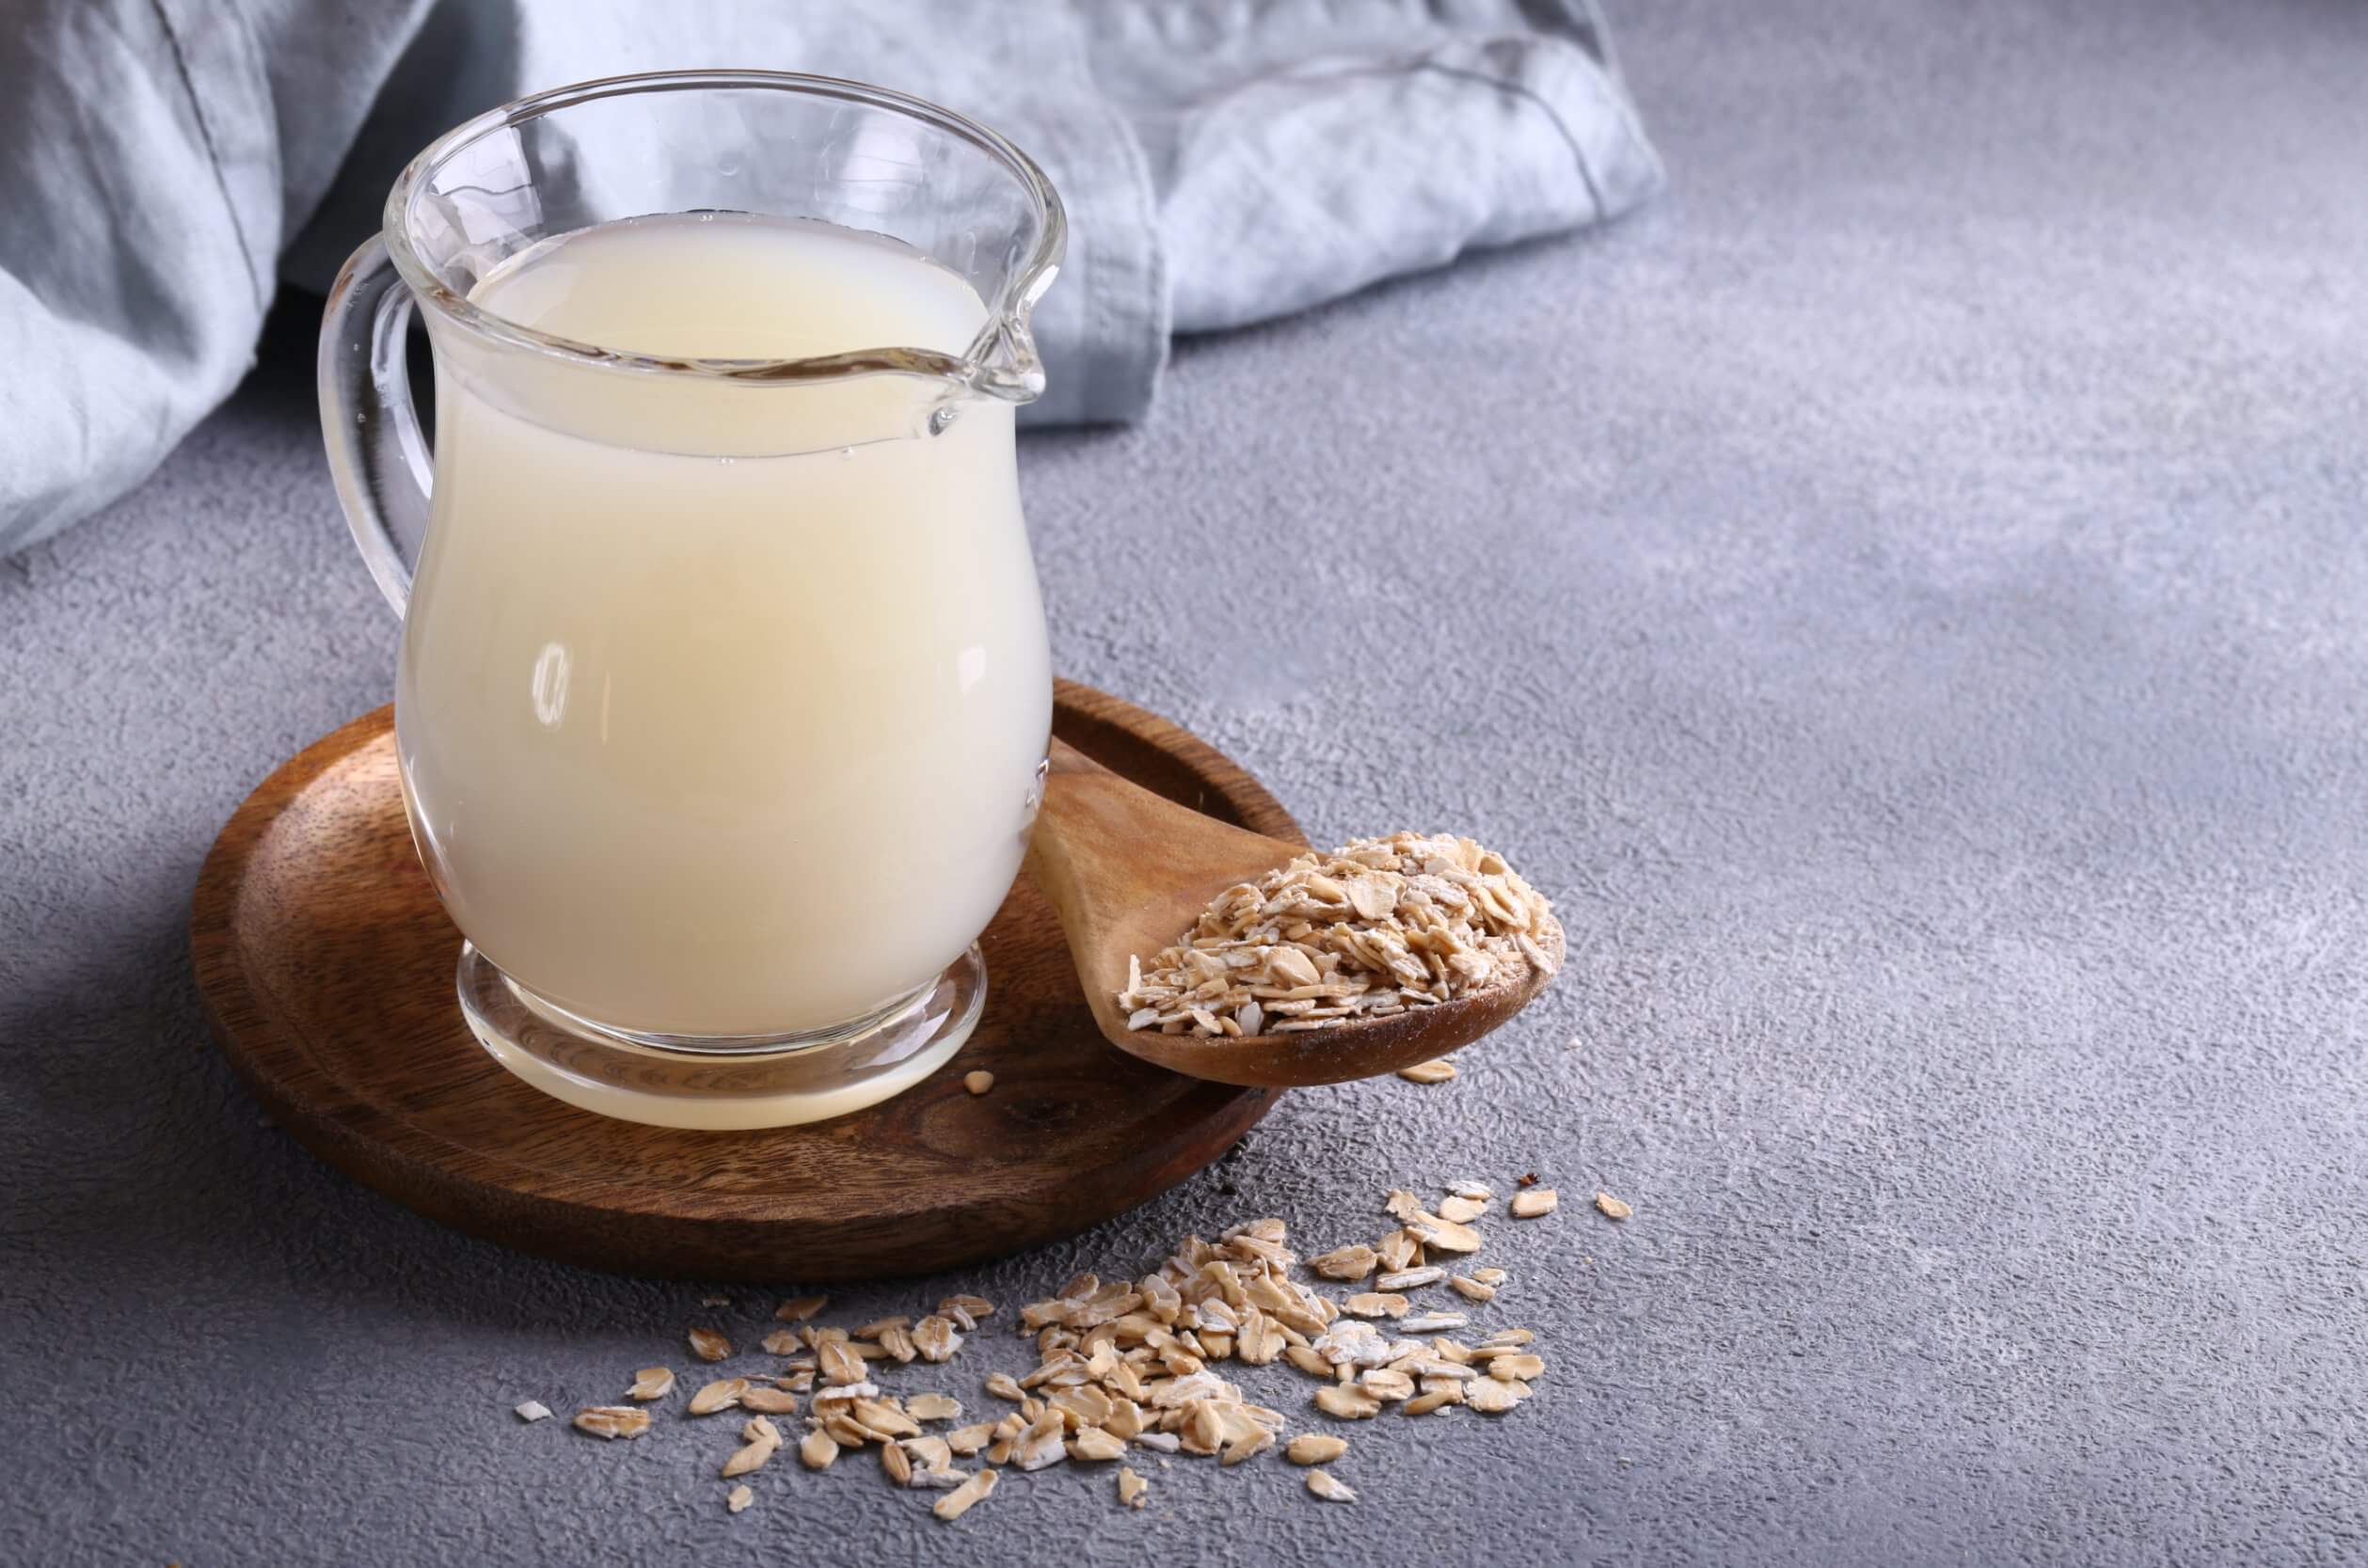 Cómo preparar leche de avena: receta y beneficios - Belleza estética